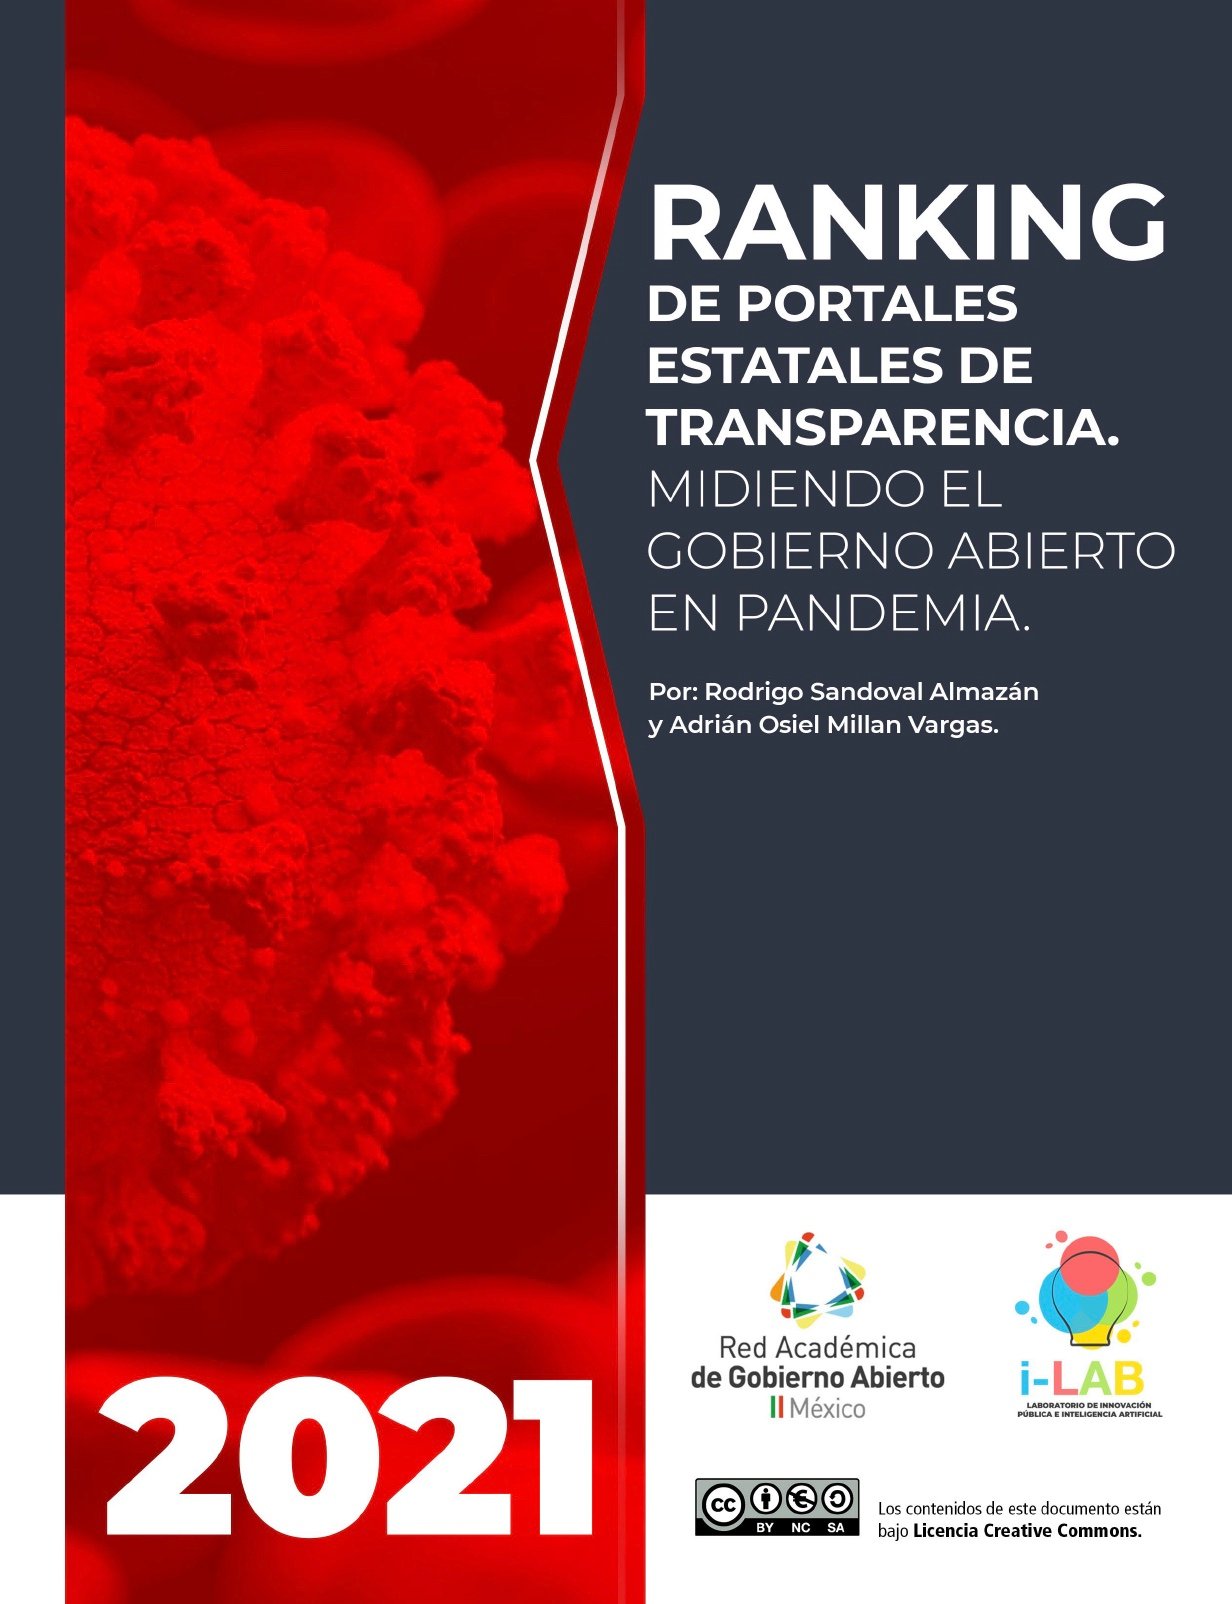 Ranking de Portales Estatales de Transparencia 2021